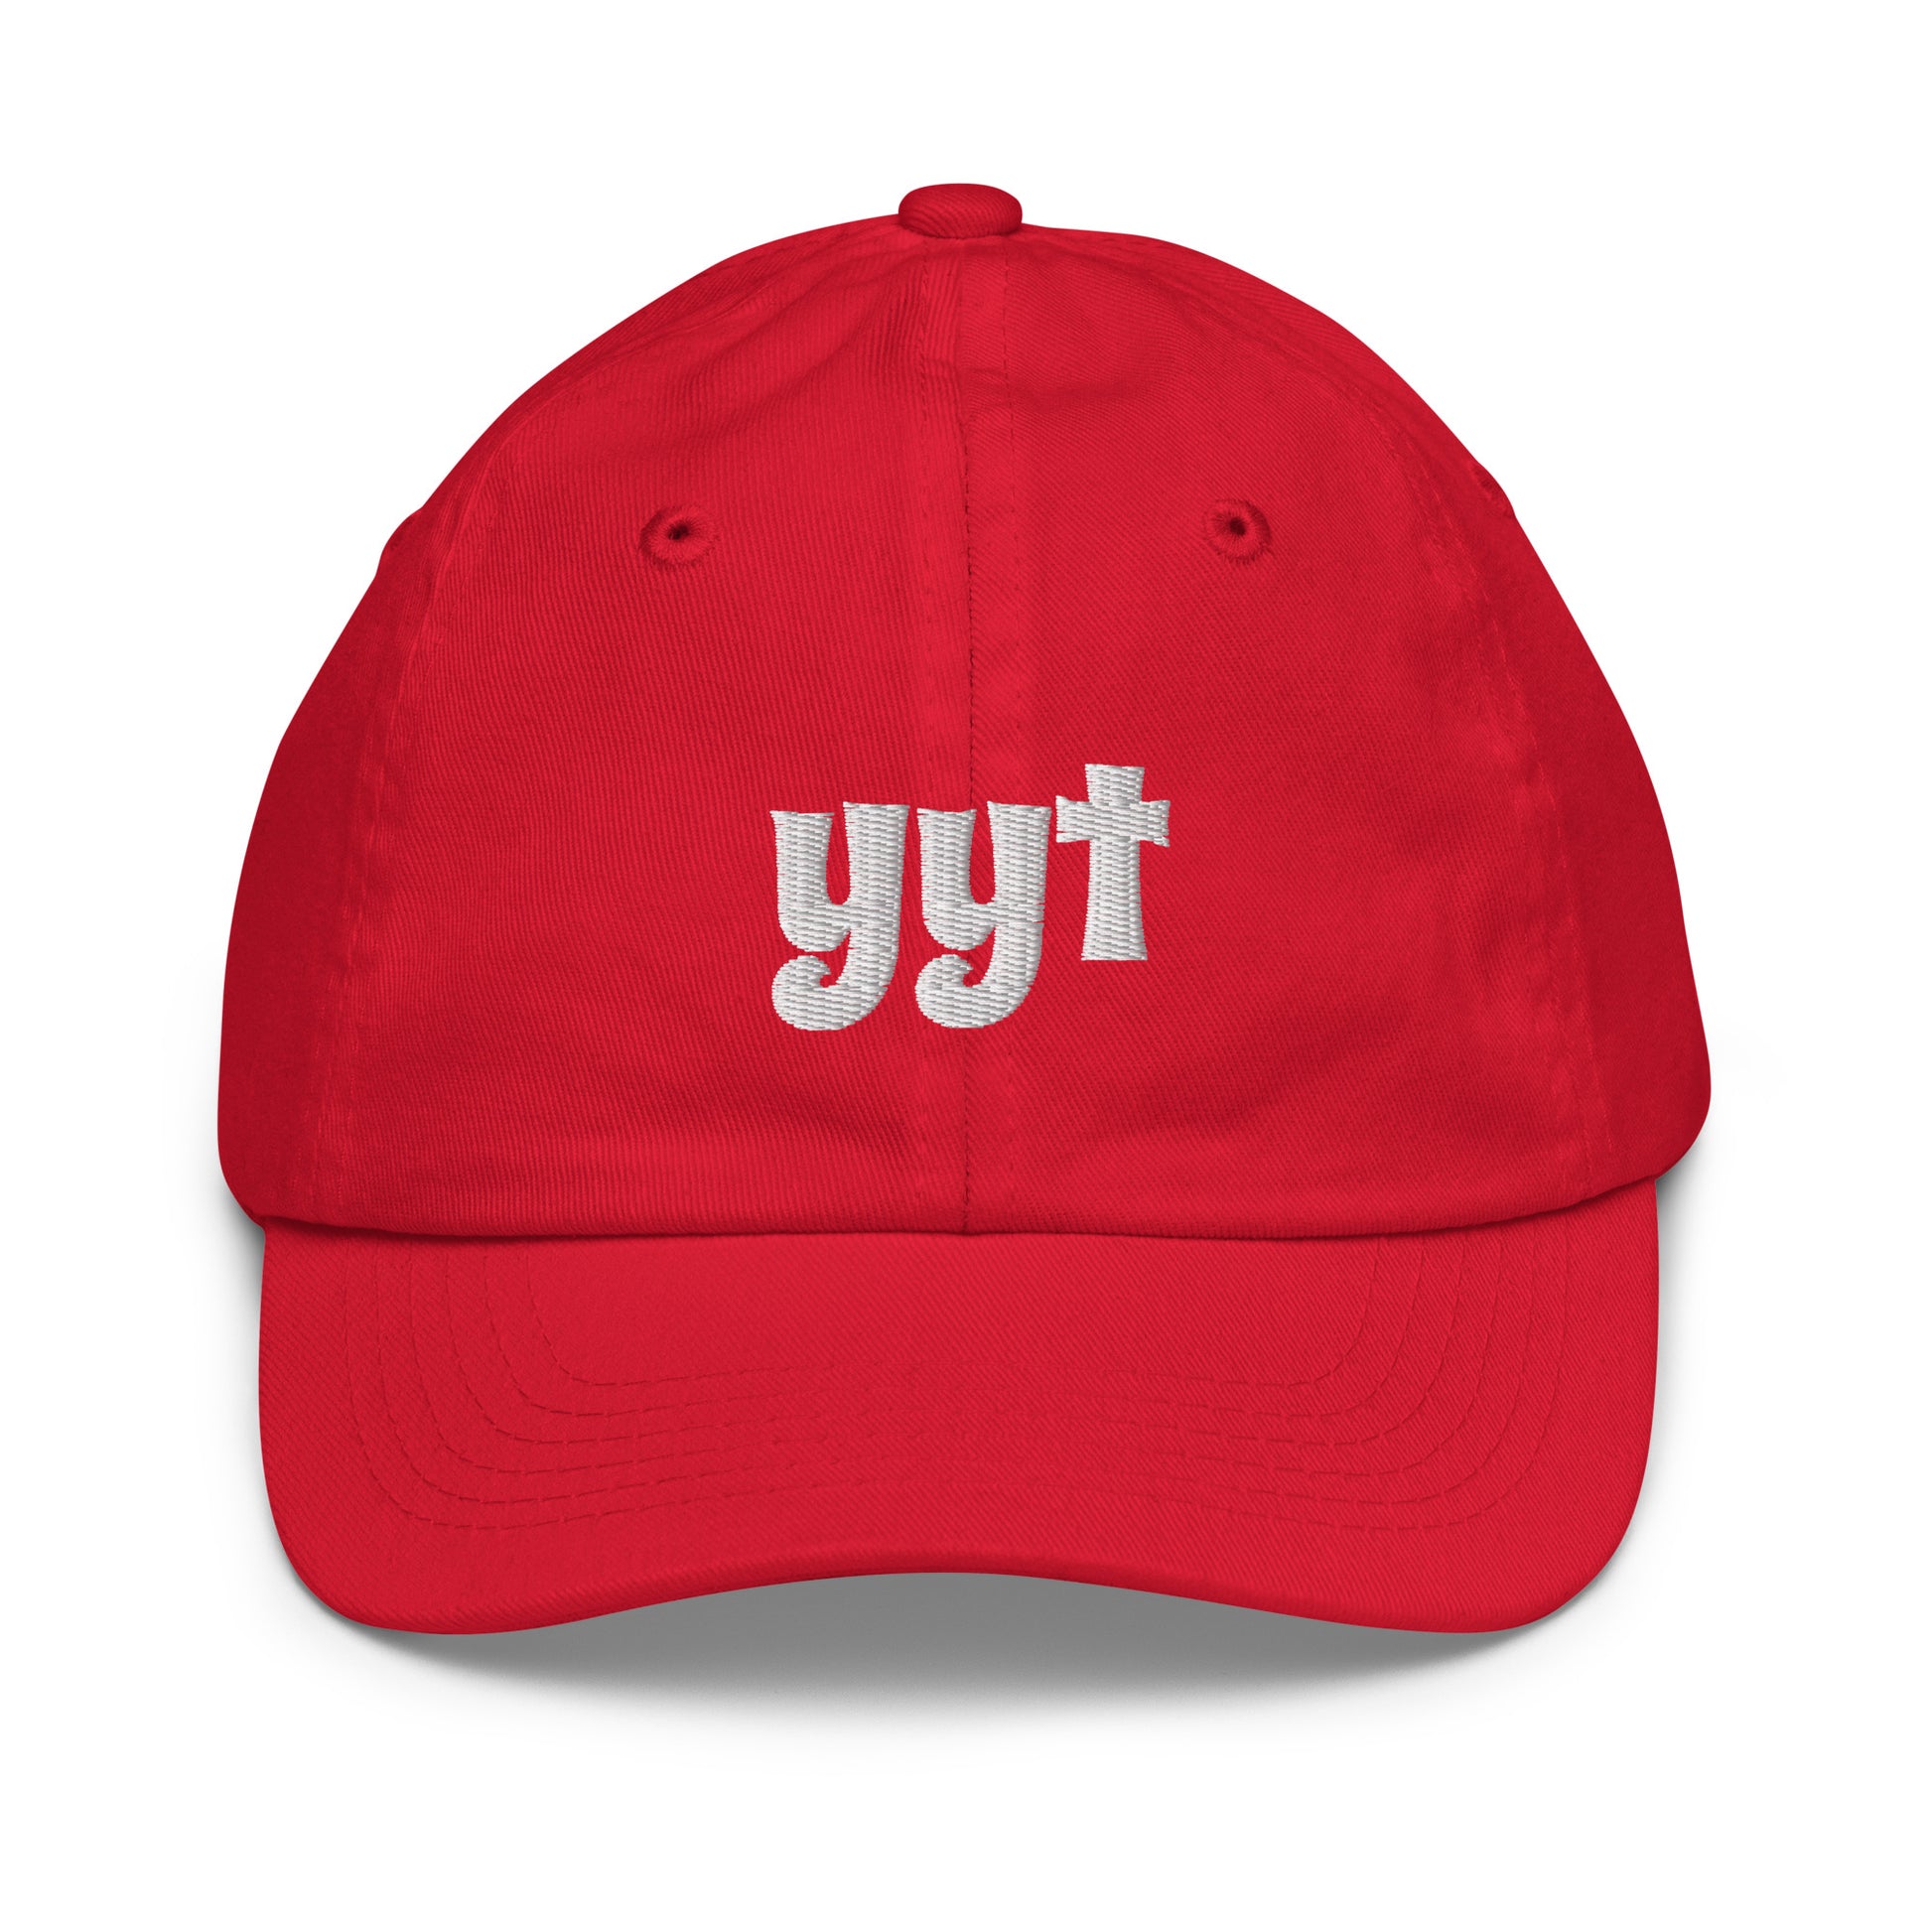 Groovy Kid's Baseball Cap - White • YYT St. John's • YHM Designs - Image 13